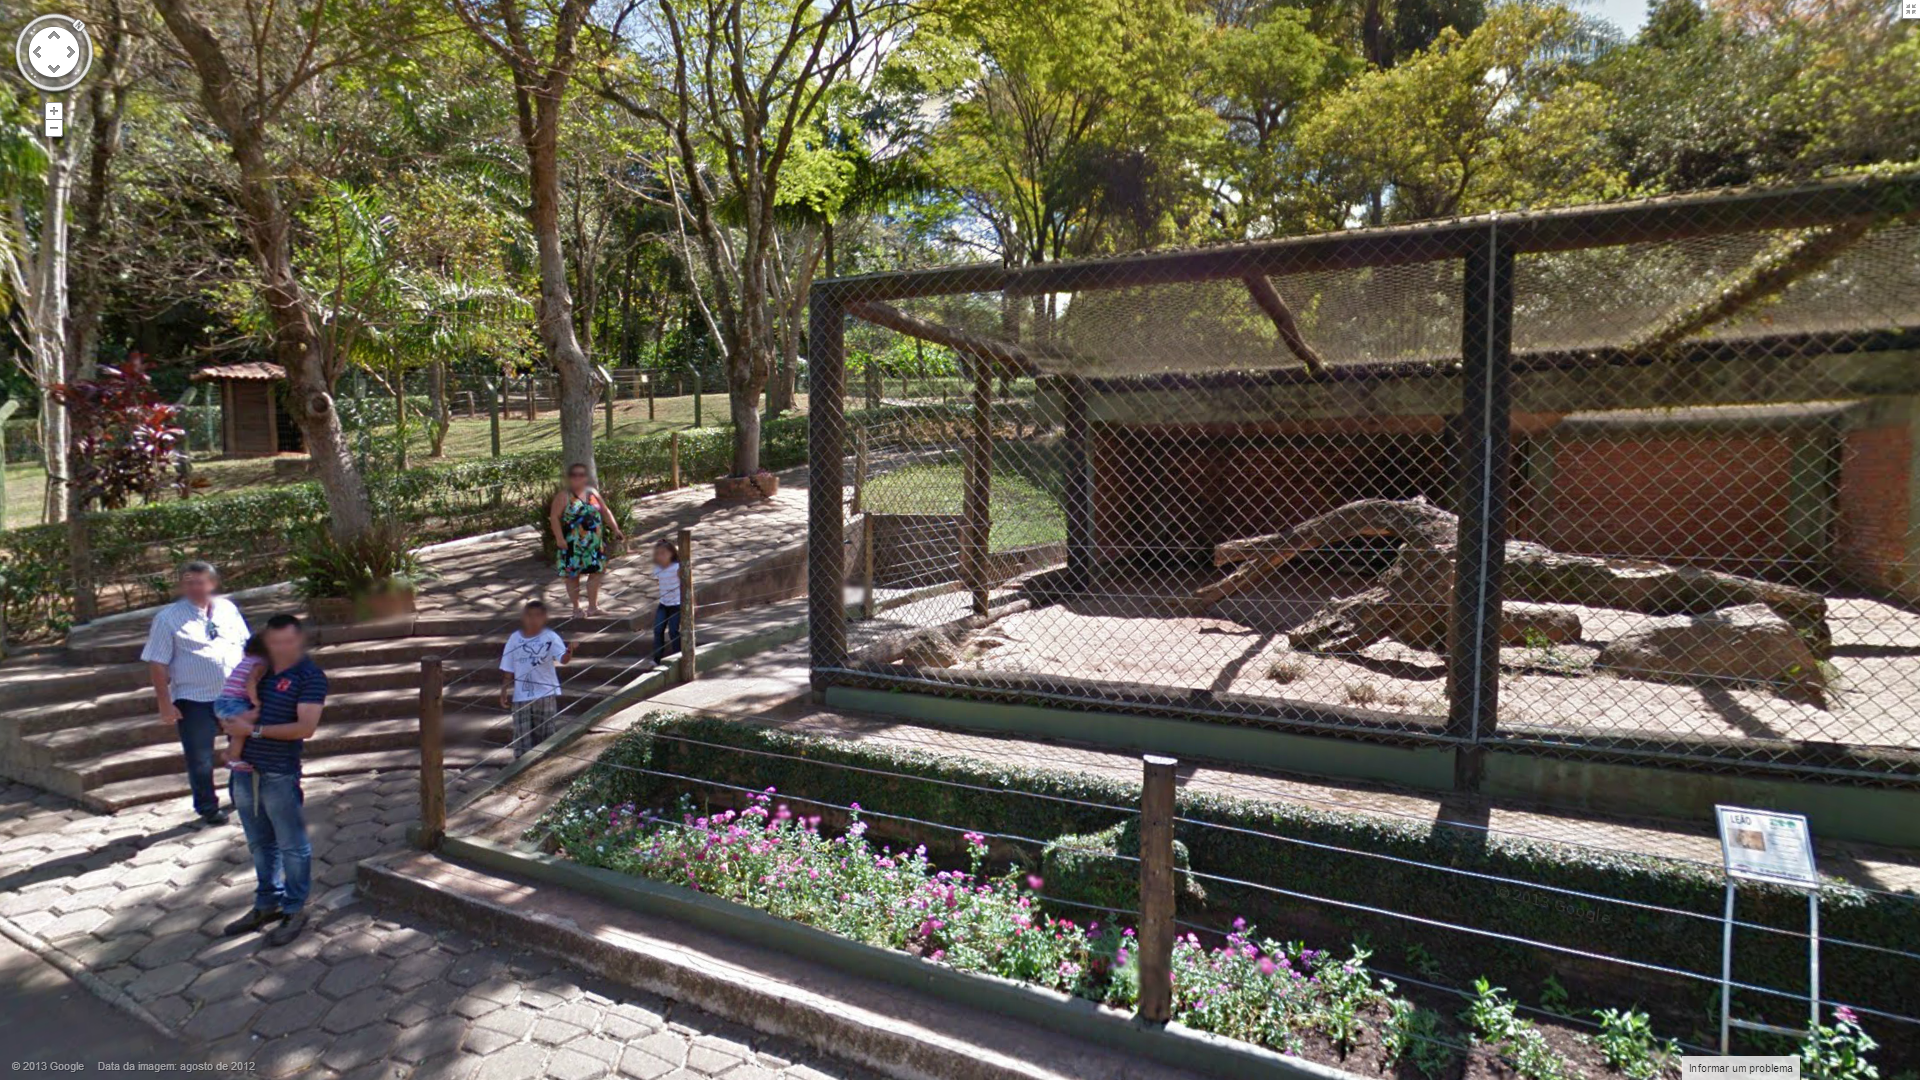 Os zoológicos de Bauru e Americana (e outros do mundo) estão no Street View